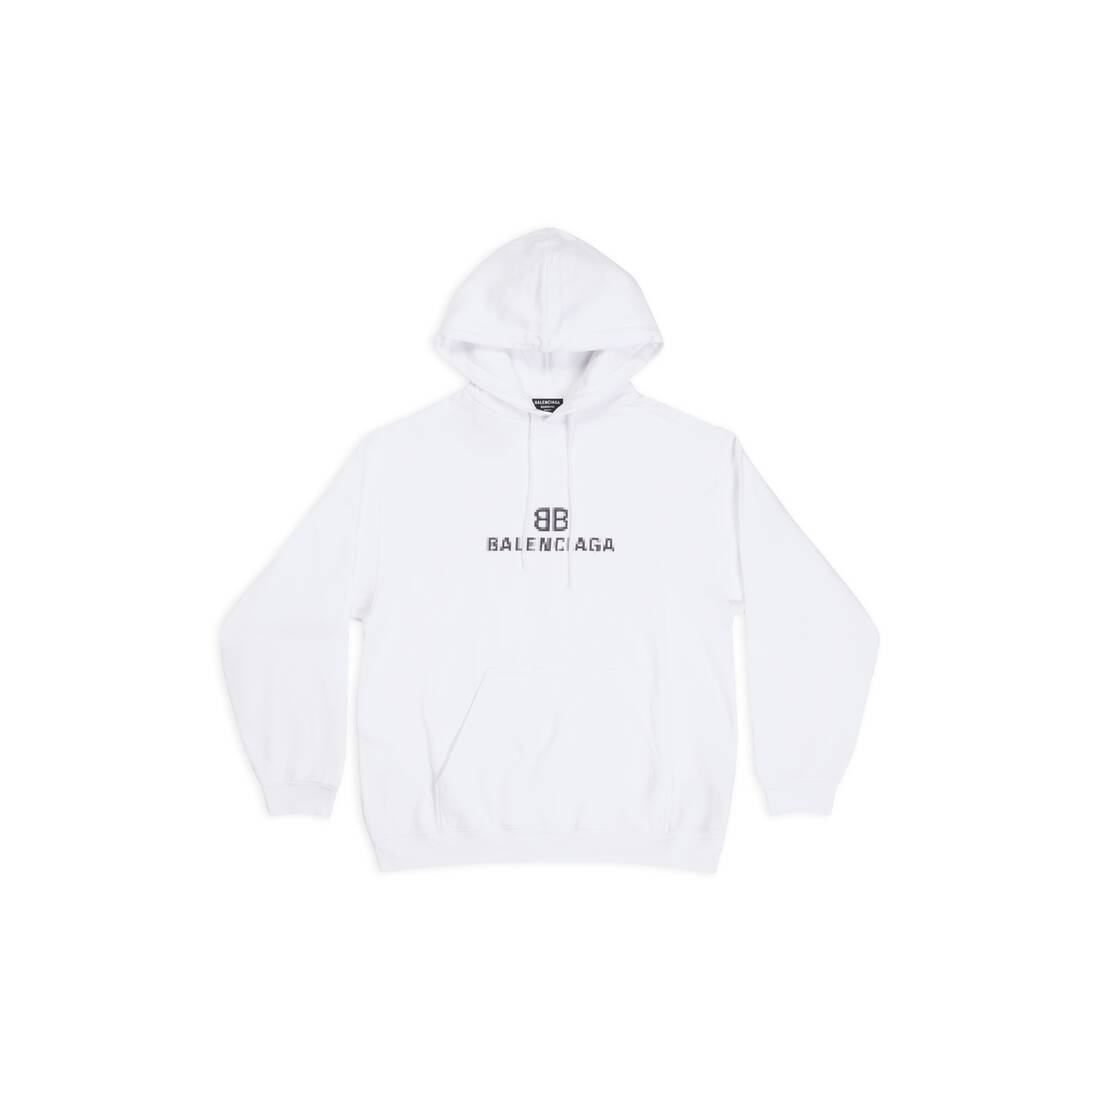 bb pixel medium fit hoodie